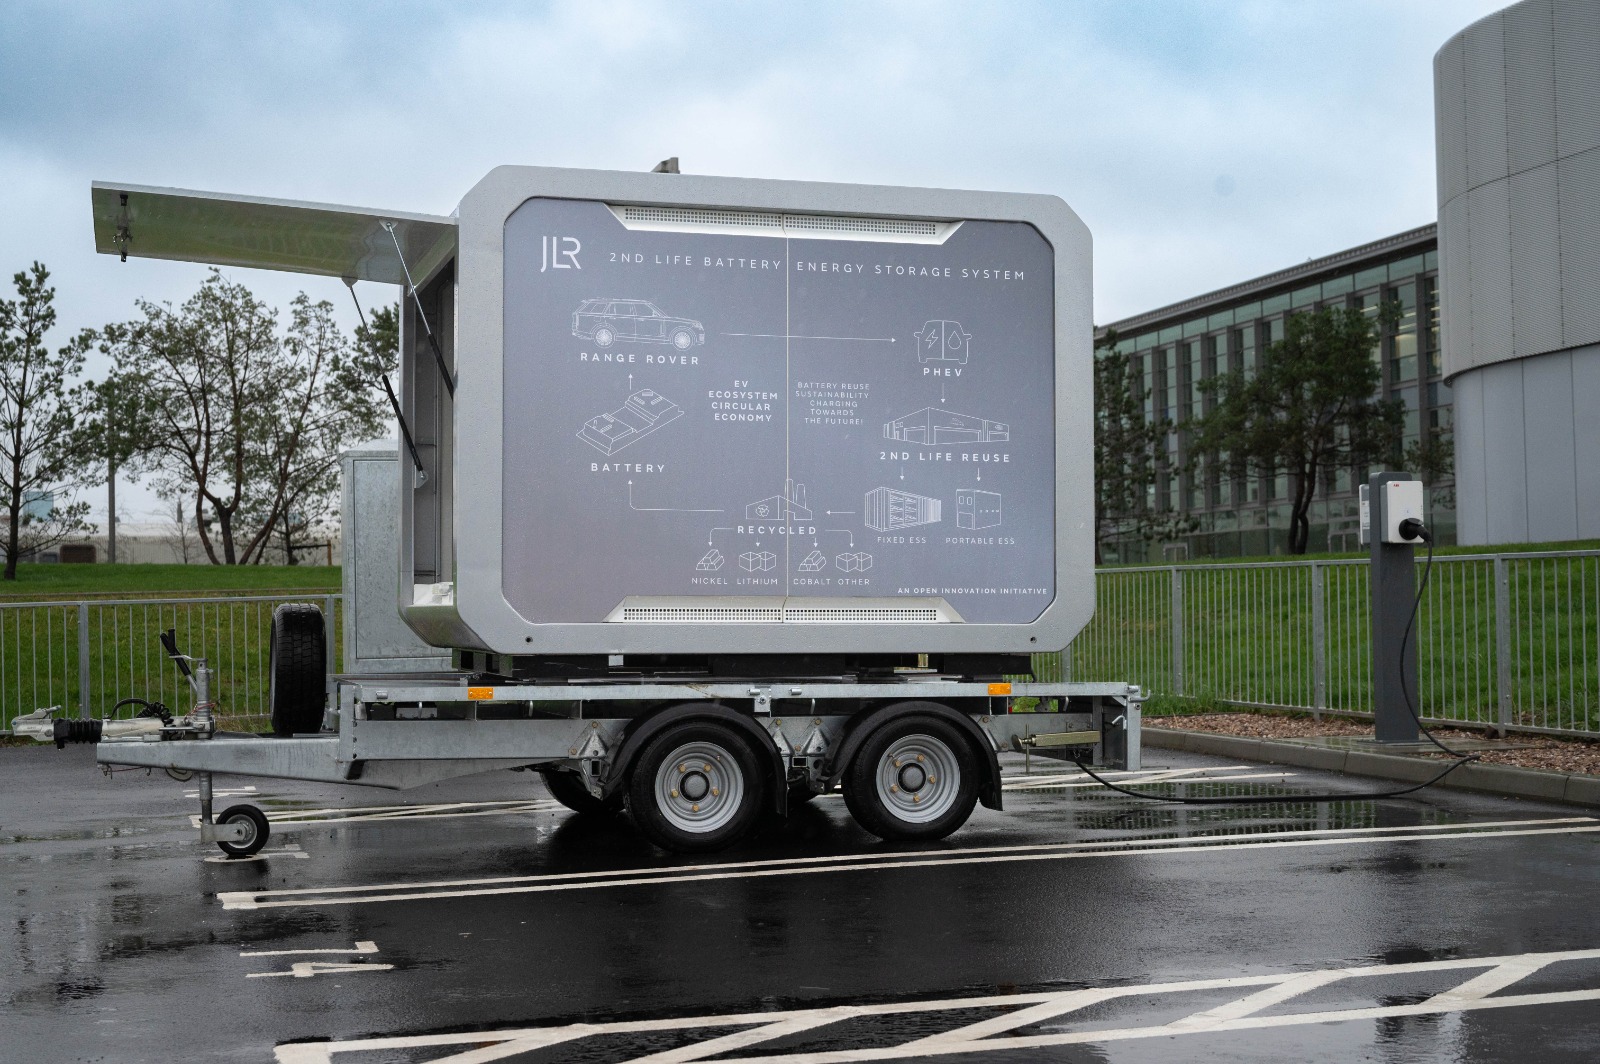 شركة JLR تستخدم أول نظام لتخزين طاقة البطارية وتوفير قدرة الشحن أثناء التنقل